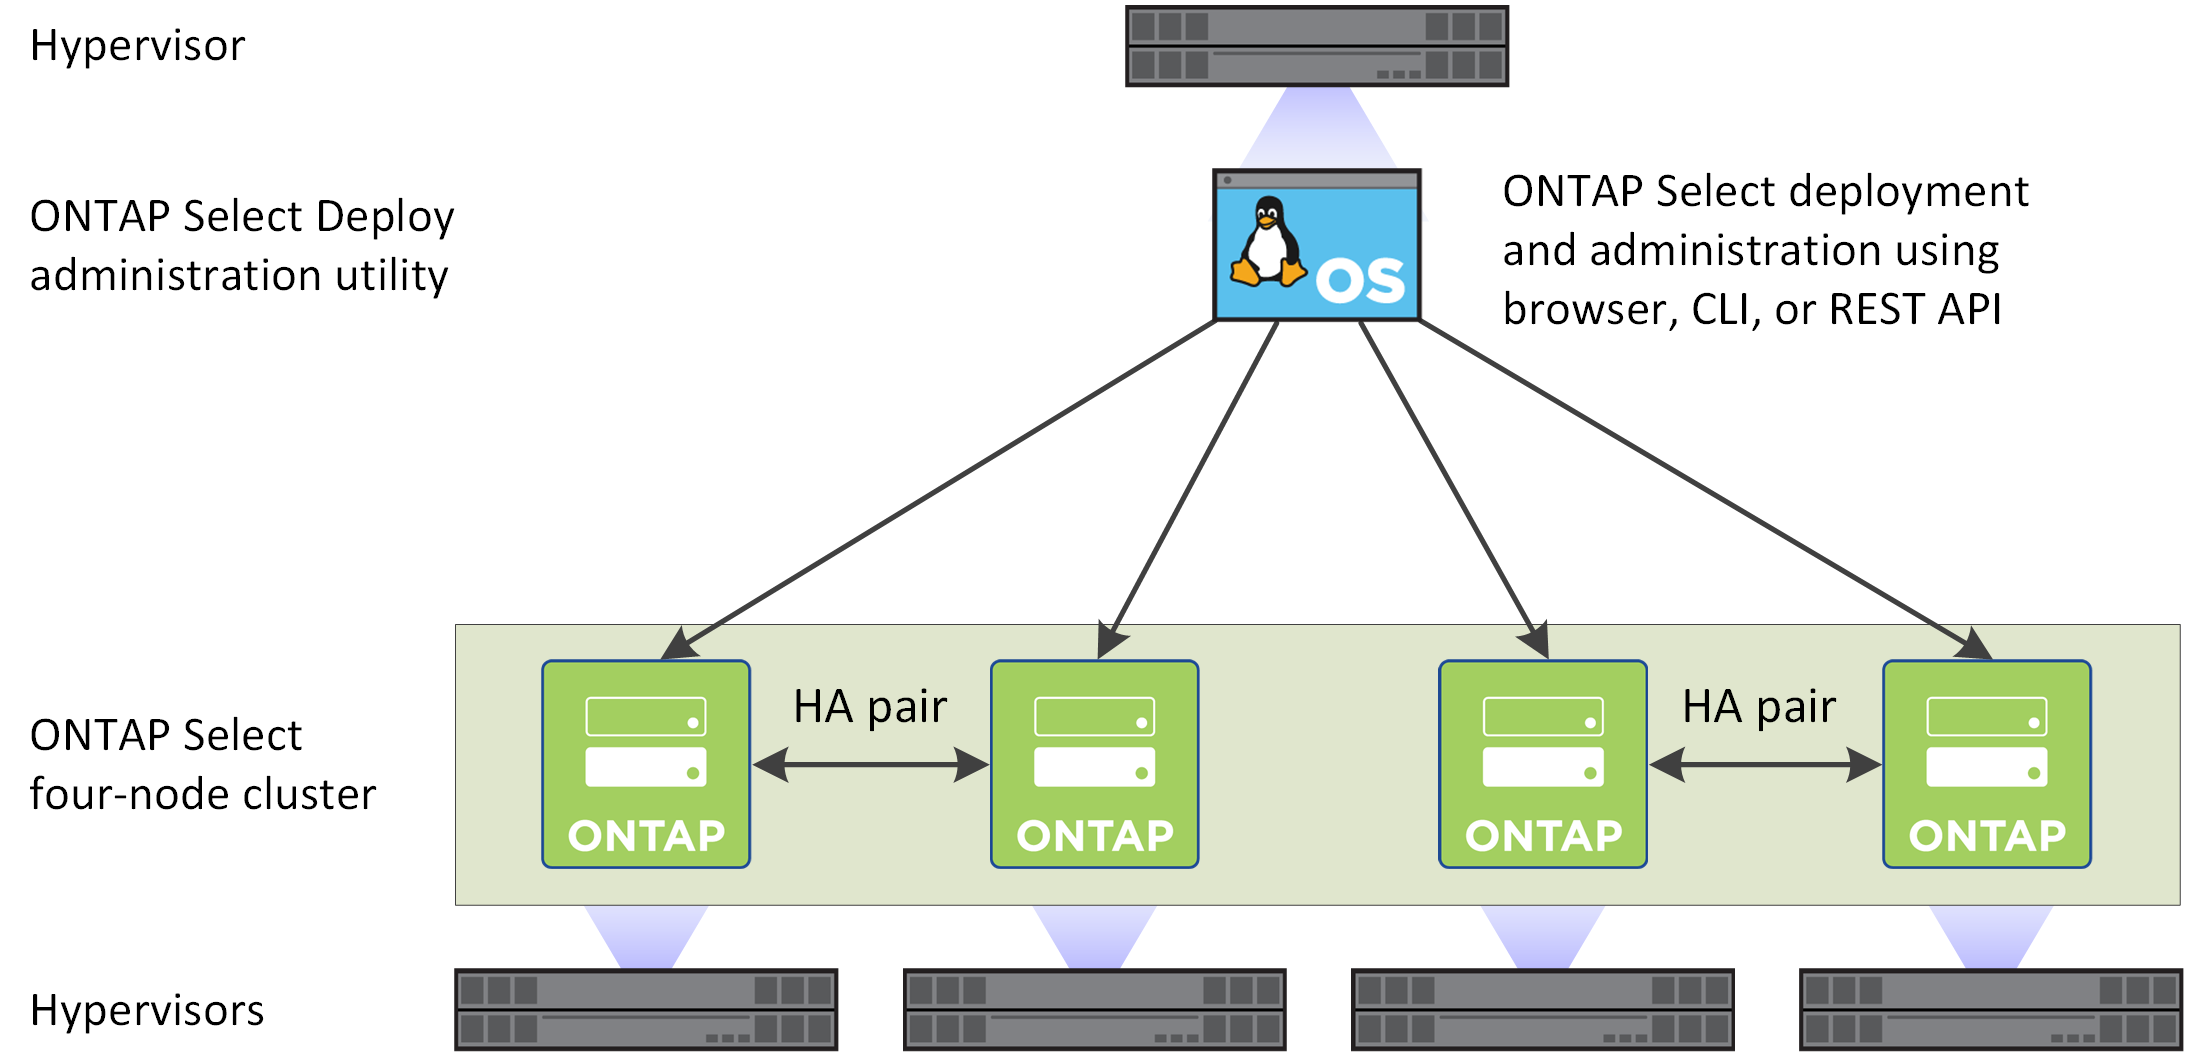 La illustre un cluster ONTAP Select à quatre nœuds créé avec l'utilitaire d'administration Deploy.